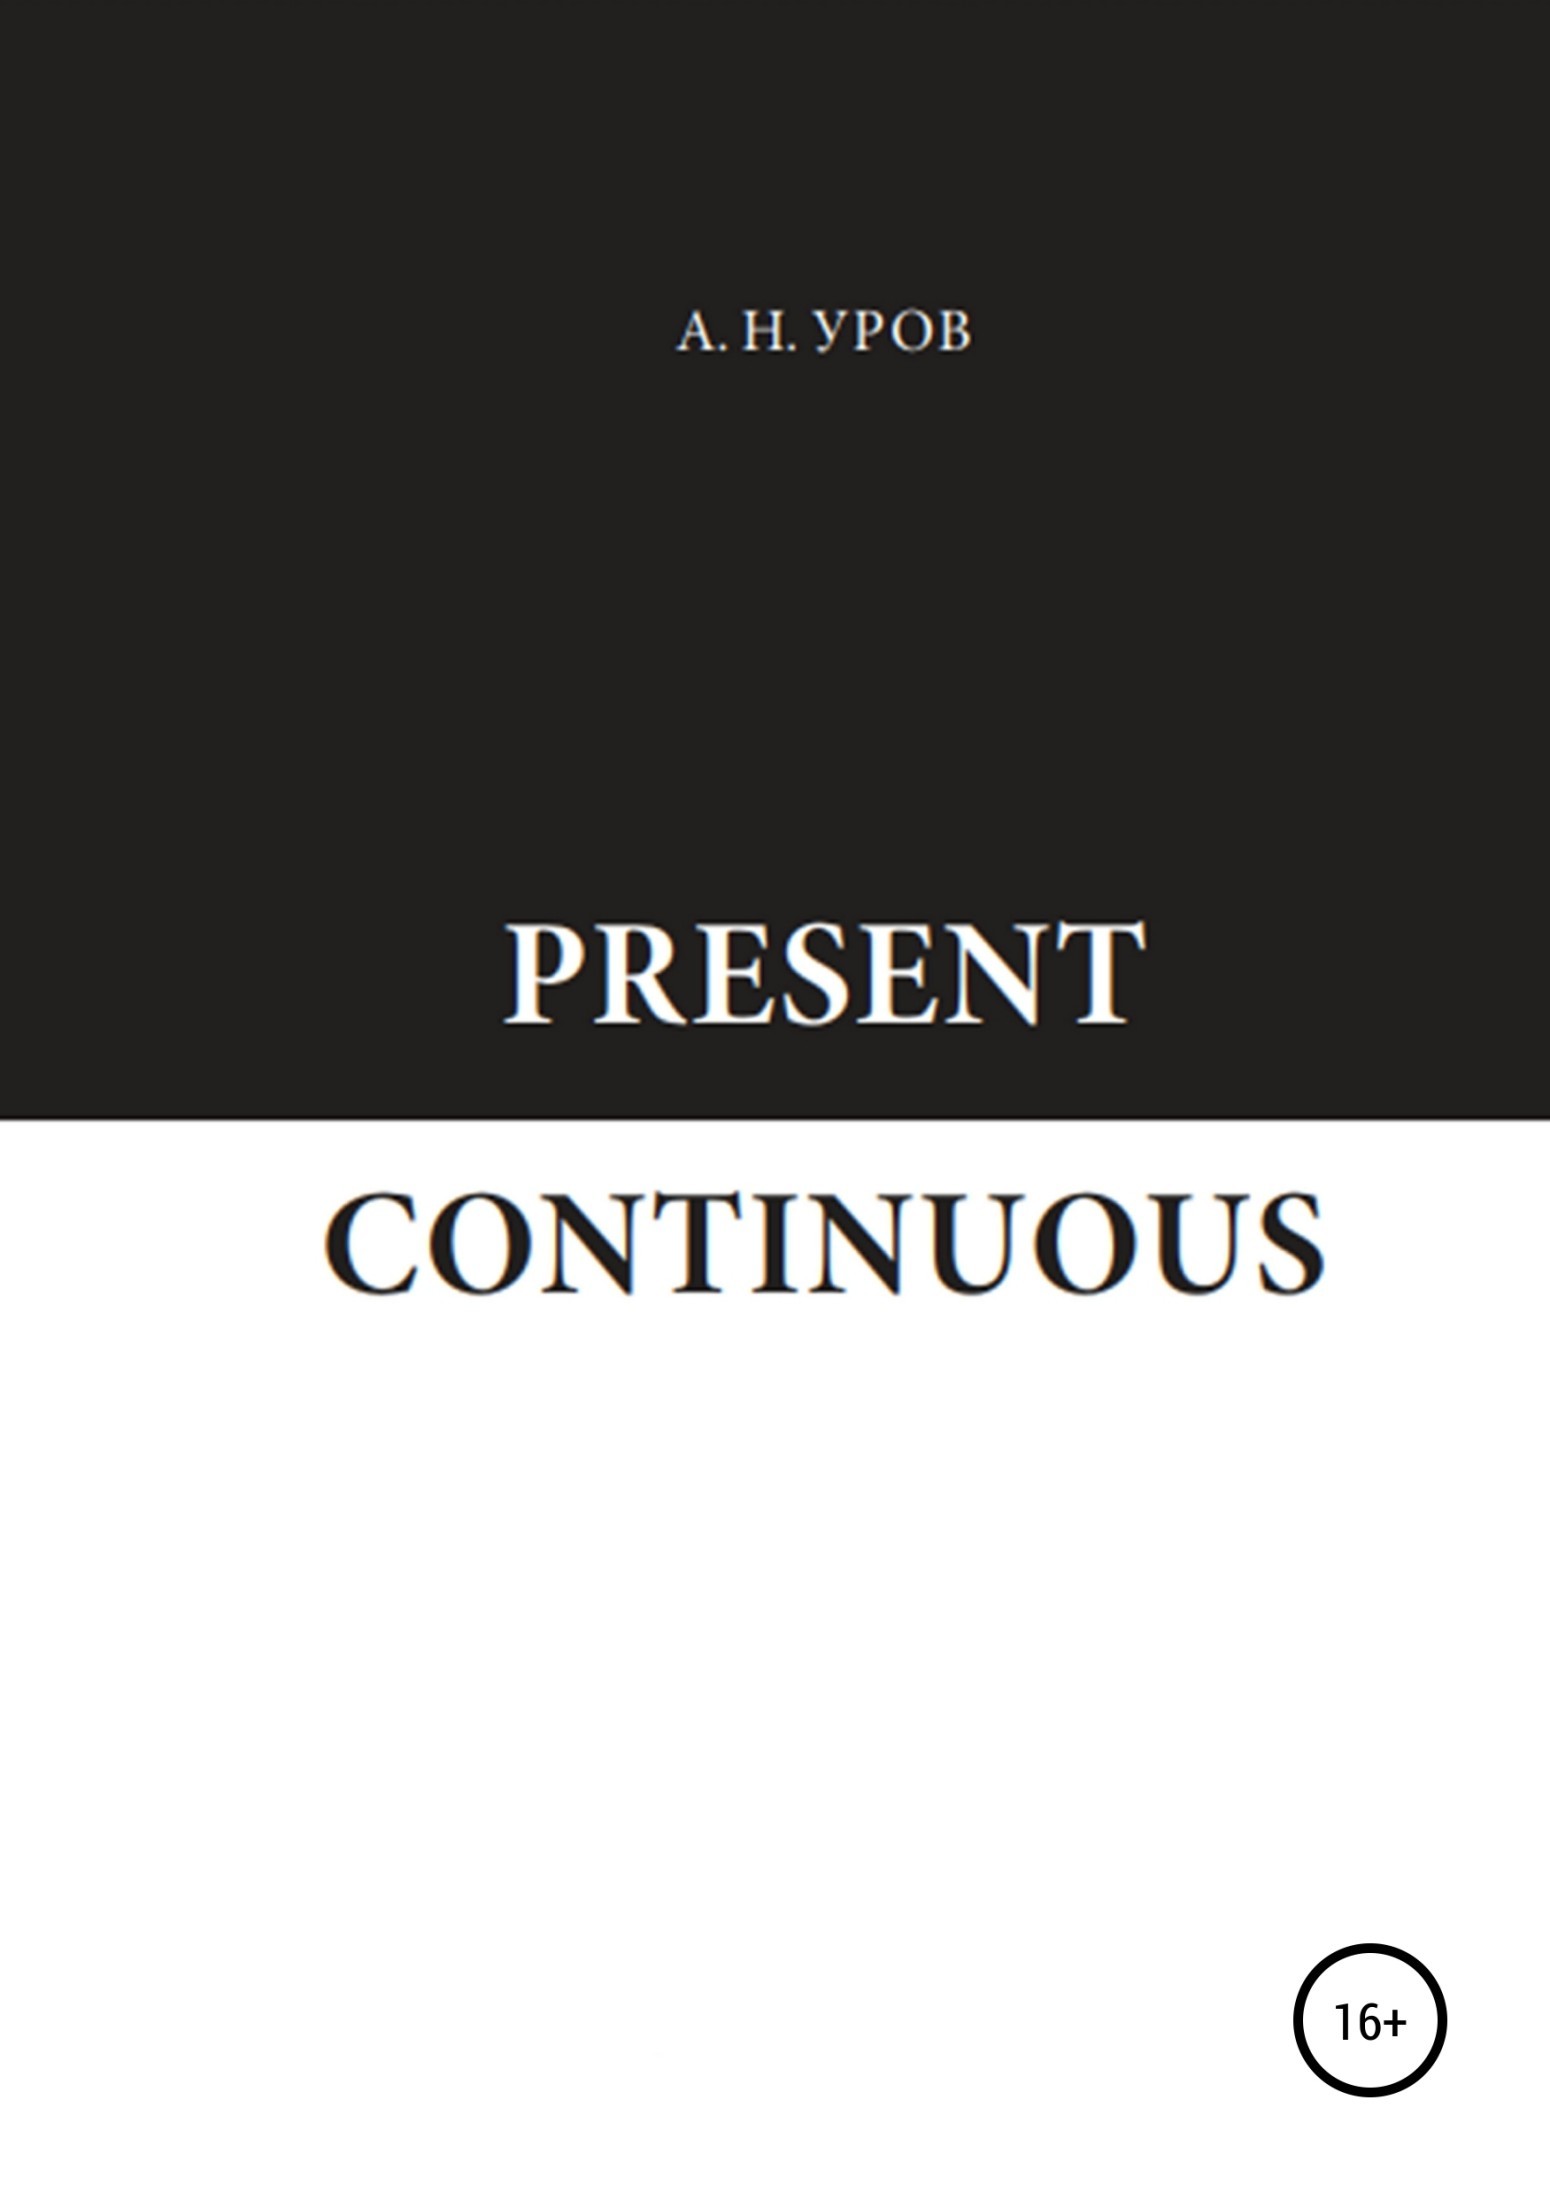 Present Continuous